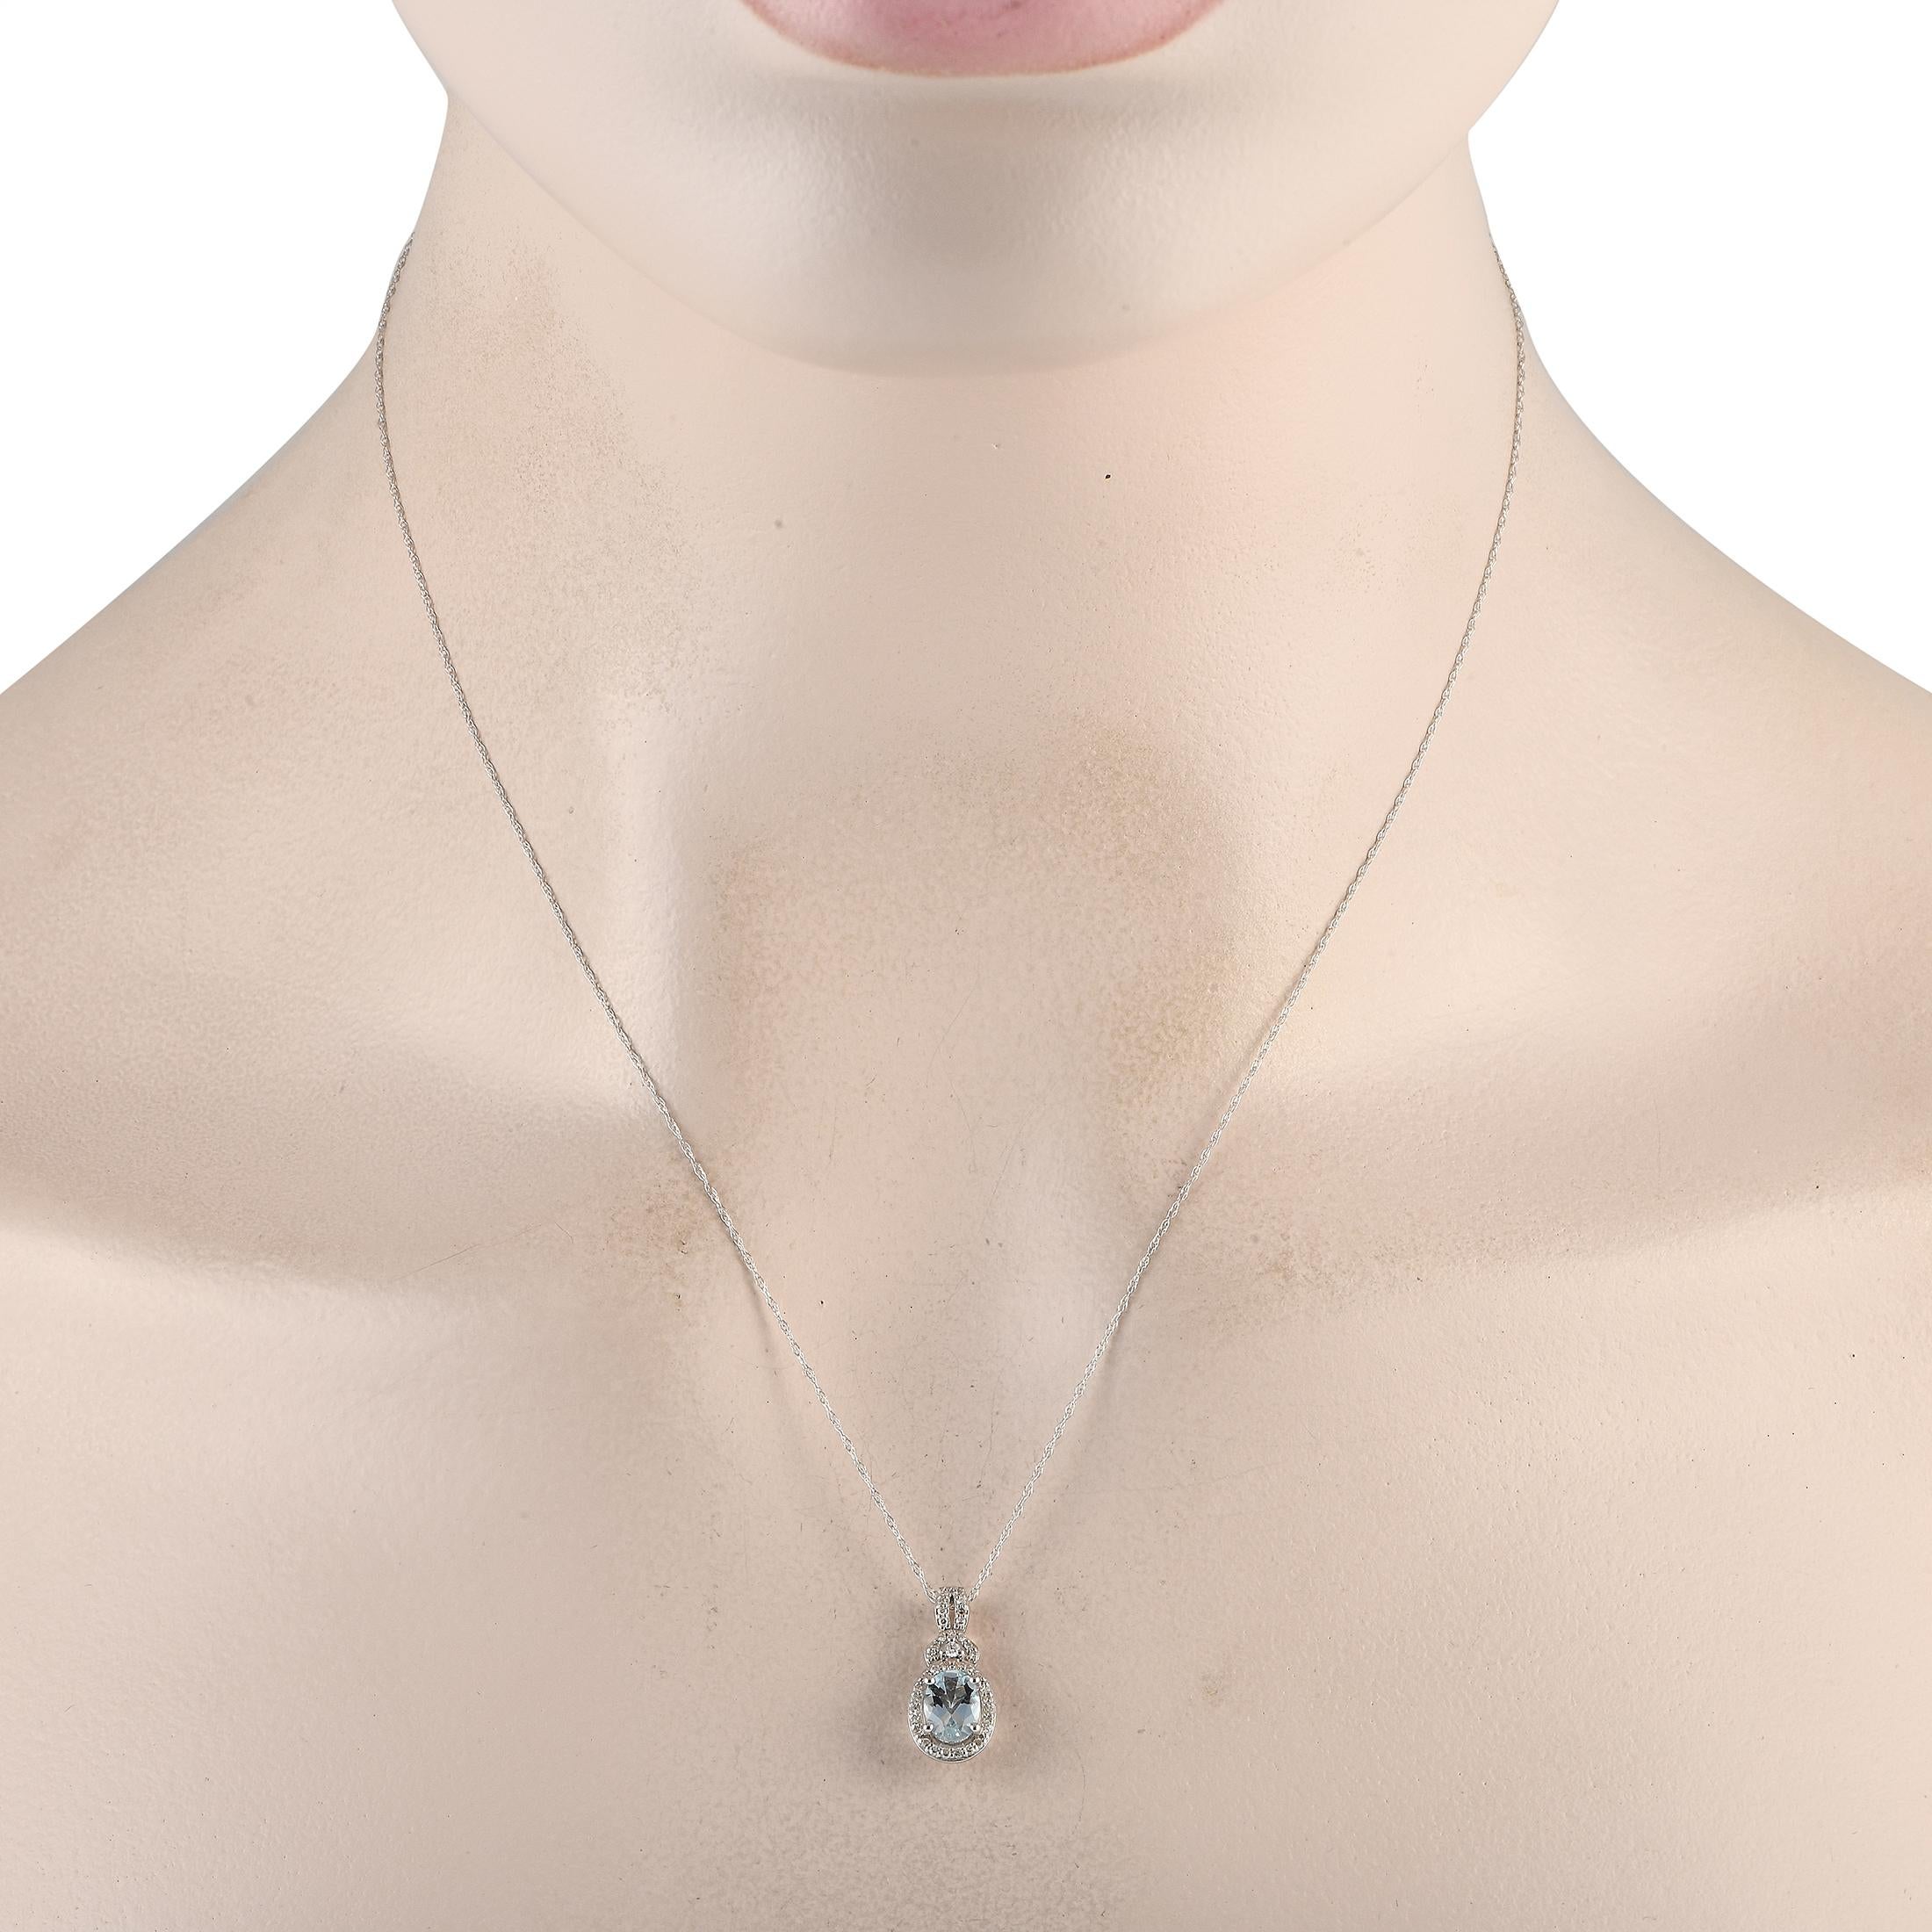 Diese exquisite Halskette ist ideal für alle, die einen minimalistischen Sinn für Stil haben. Der strahlende Anhänger wird durch einen zarten Aquamarin in der Mitte und funkelnde Diamanten von insgesamt 0,15 Karat zum Leben erweckt. Der Anhänger aus